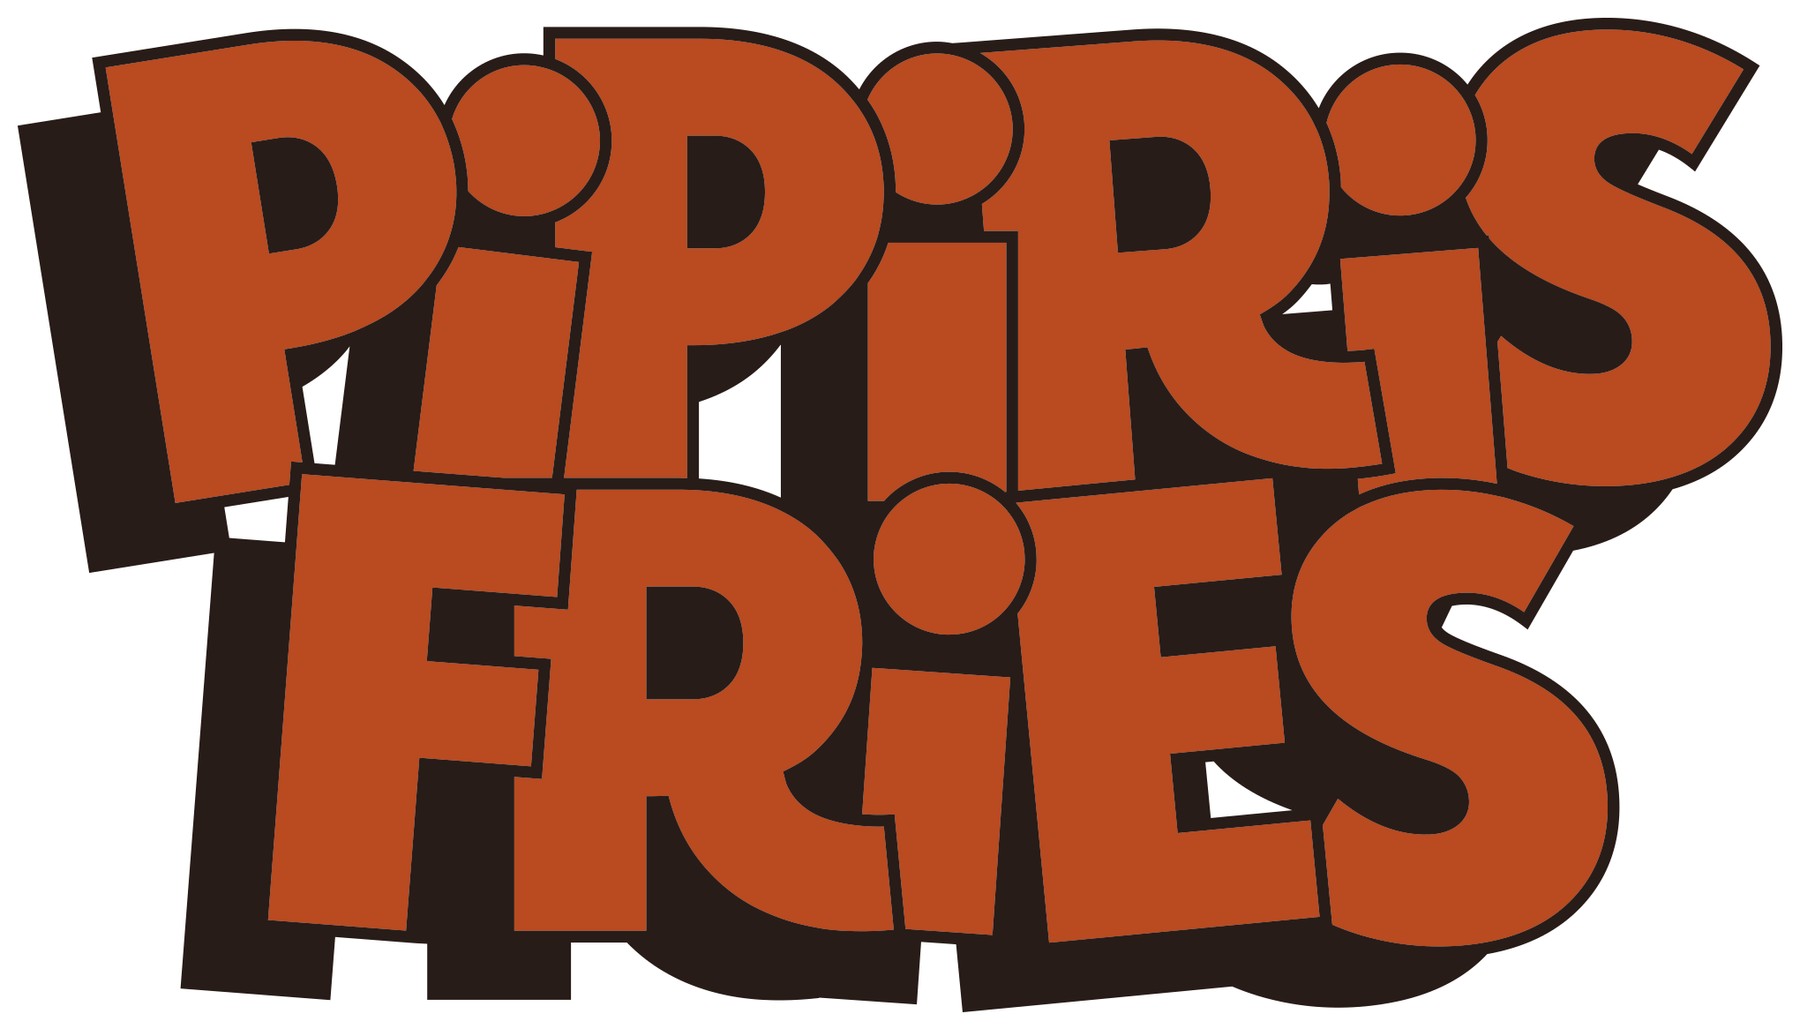 pipiris_fries_logo.png